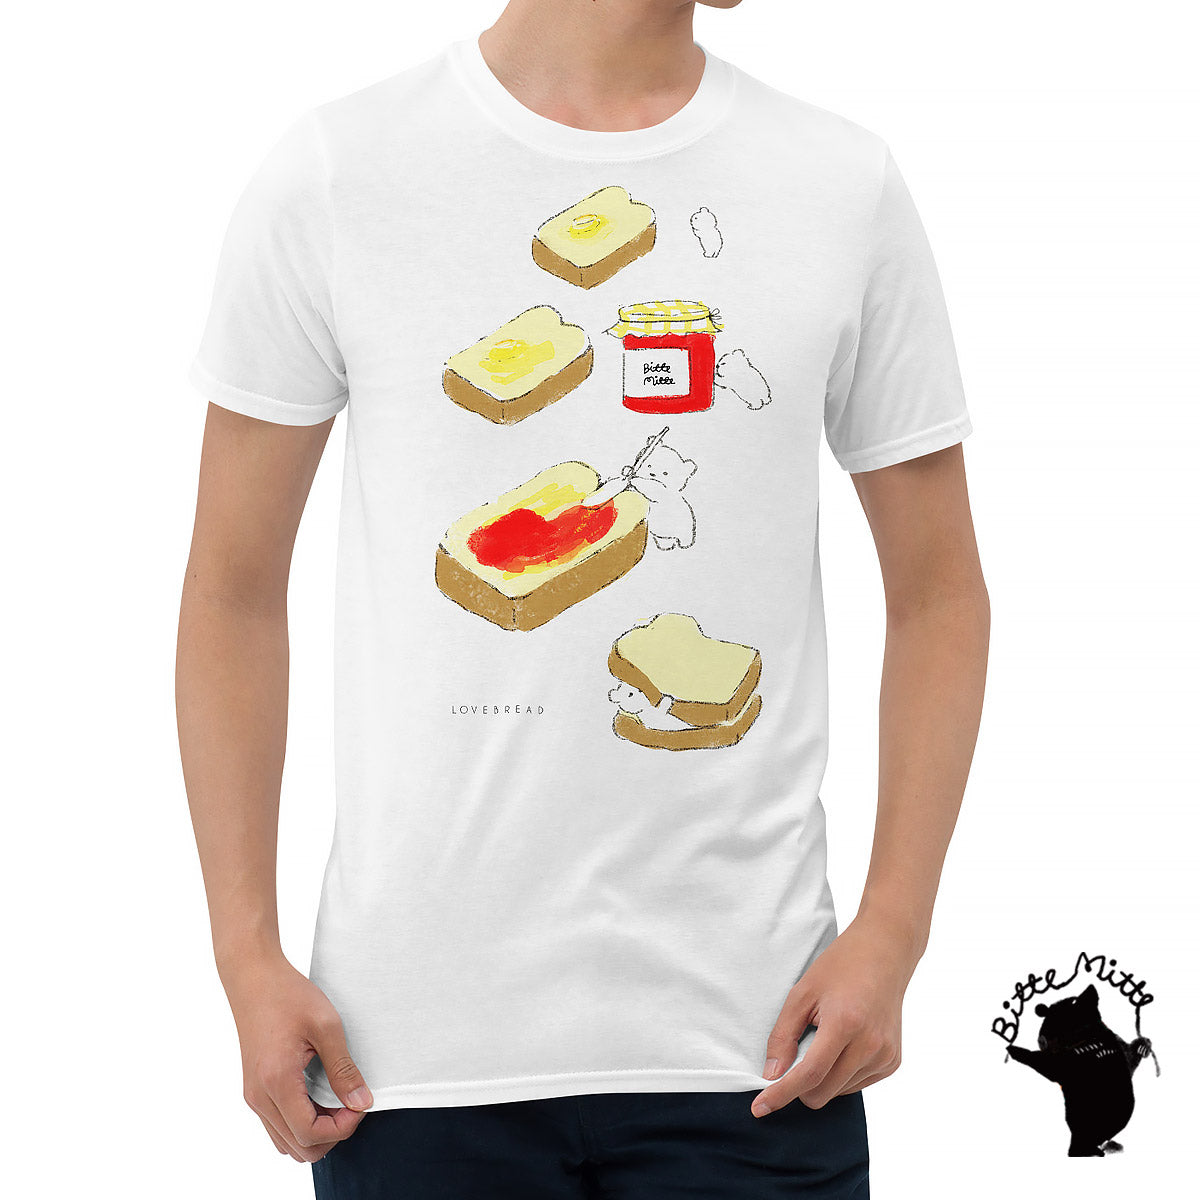 Tシャツ かわいい デザイン おしゃれ 大人可愛い 人気 通販 食パン【半袖/レディース/メンズ】